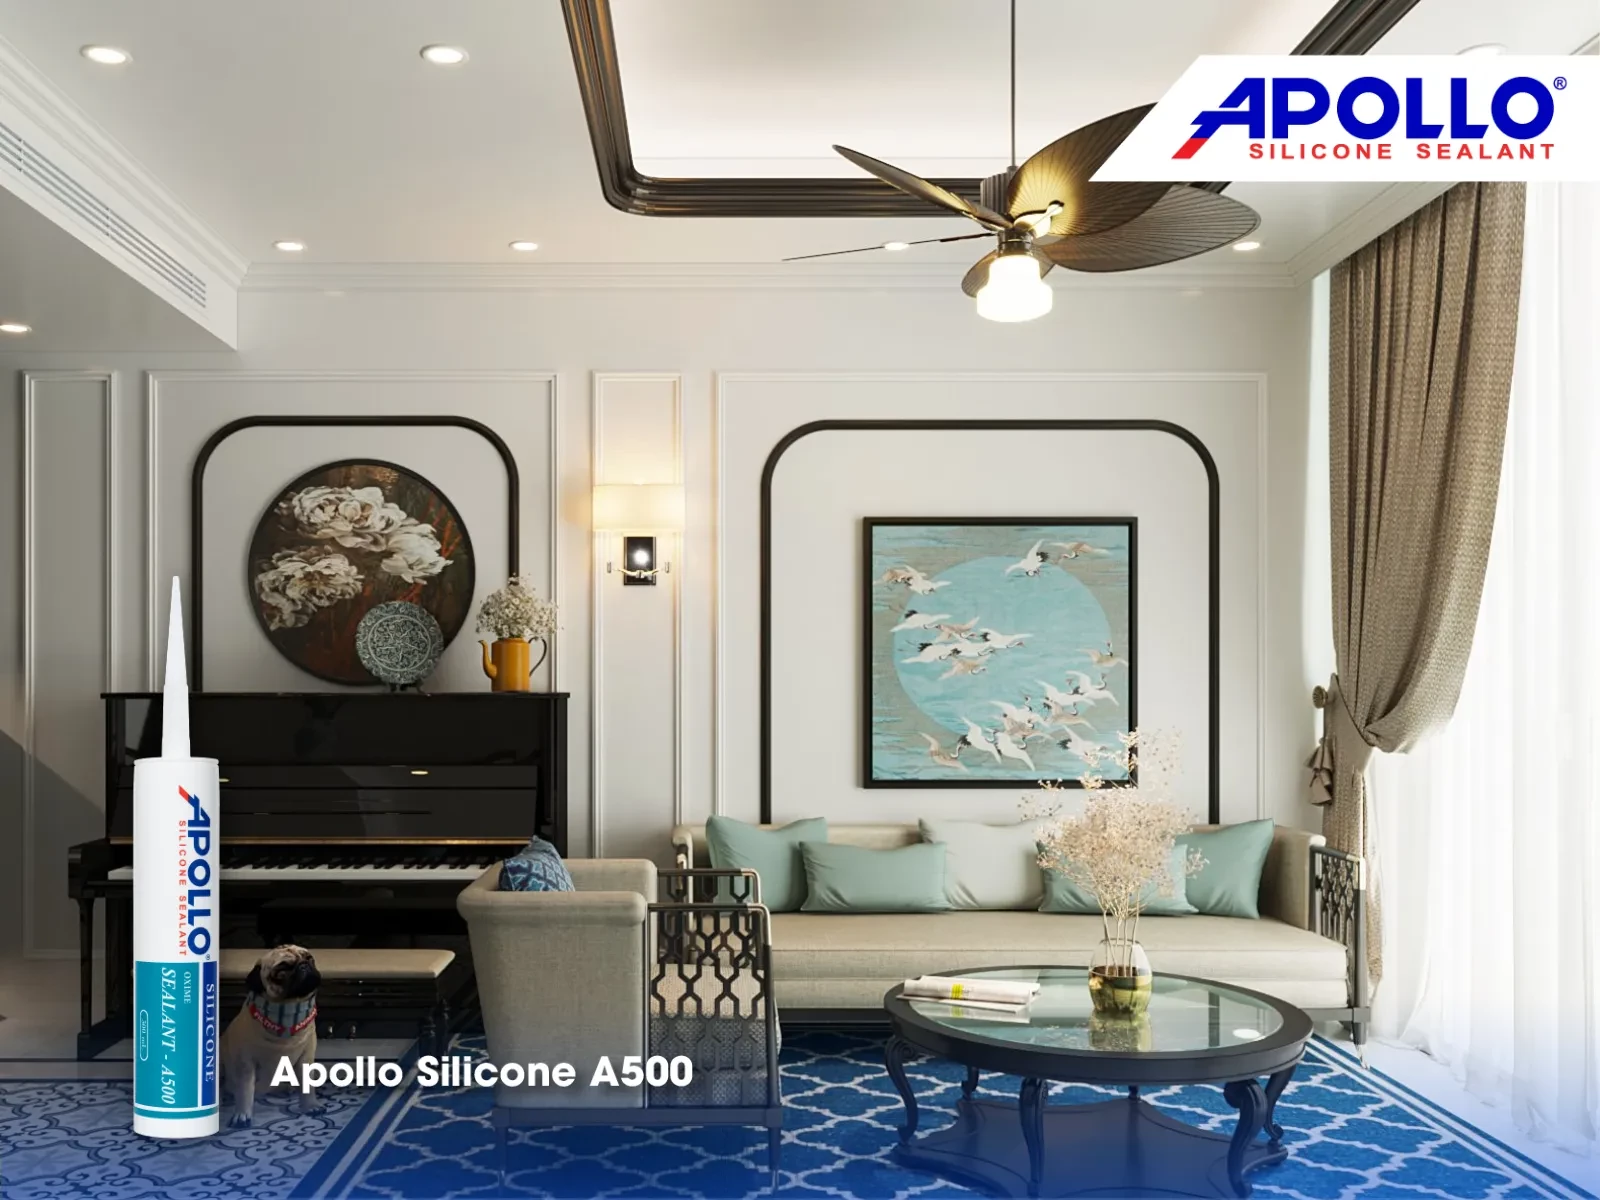 Ứng dụng này của Apollo Silicone A500 màu đen cực kỳ phù hợp với việc trang trí nhà theo phong cách Indochine